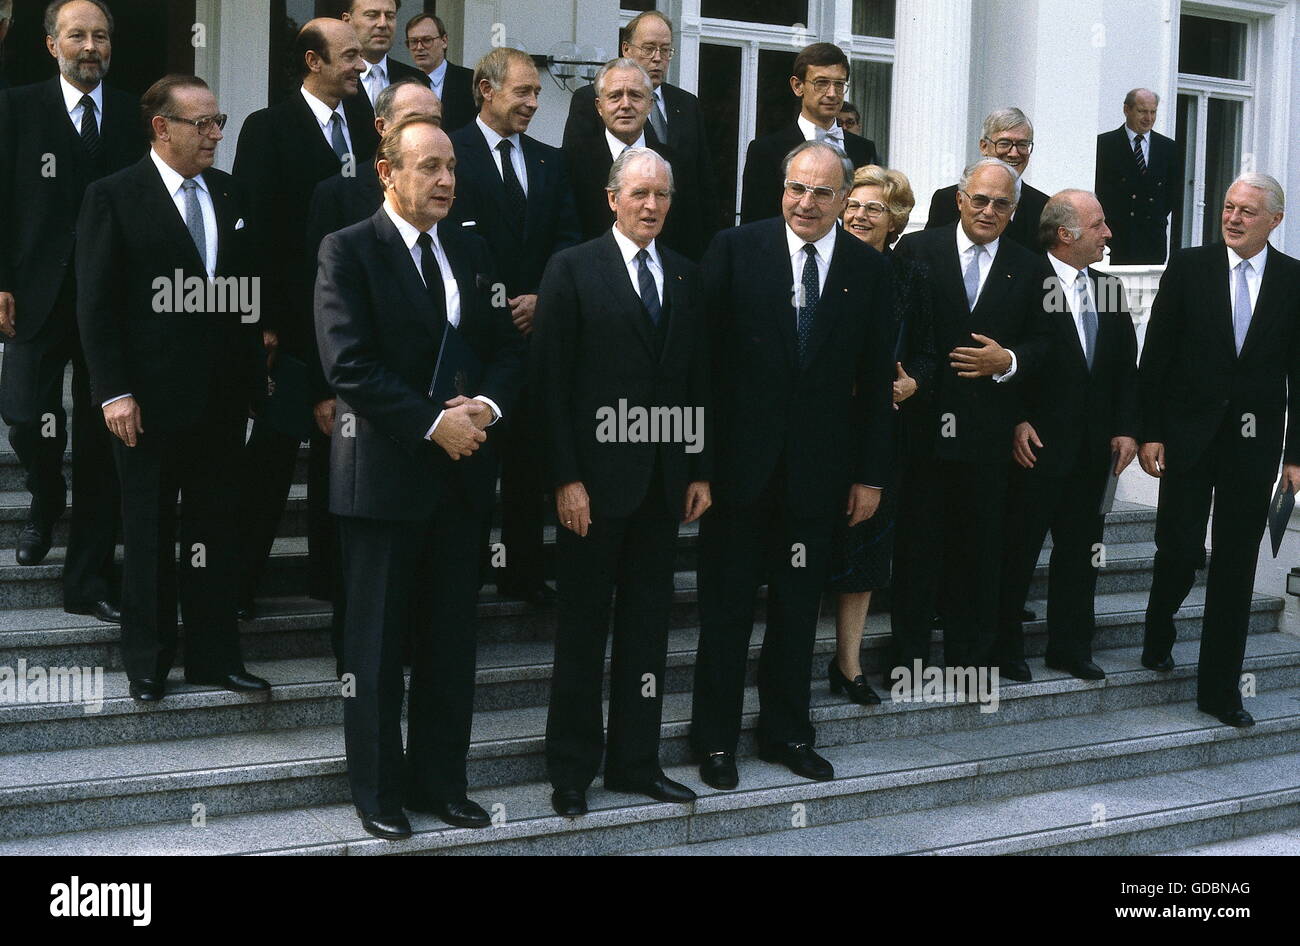 Kohl, Helmut, * 3.4.1930, deutscher Politiker (CDU), Kanzler von Deutschland 1982 - 1998, Gruppenbild mit seinem Kabinett nach Ernennung, Villa Hammerschmidt, Bonn, 4.10.1982, Stockfoto